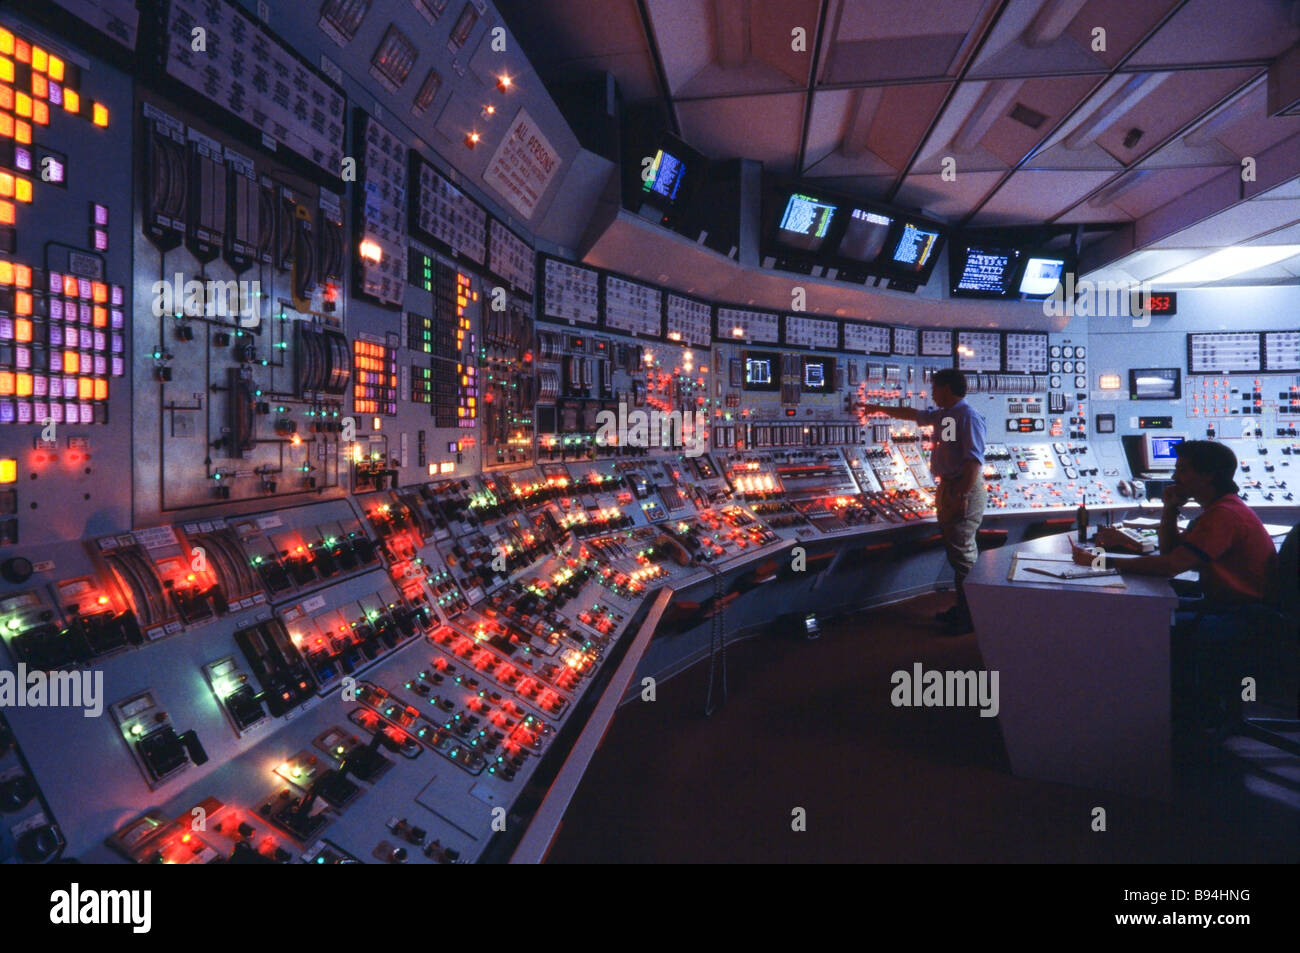 Producción de energía, la planta de energía nuclear,sala de control Foto de stock